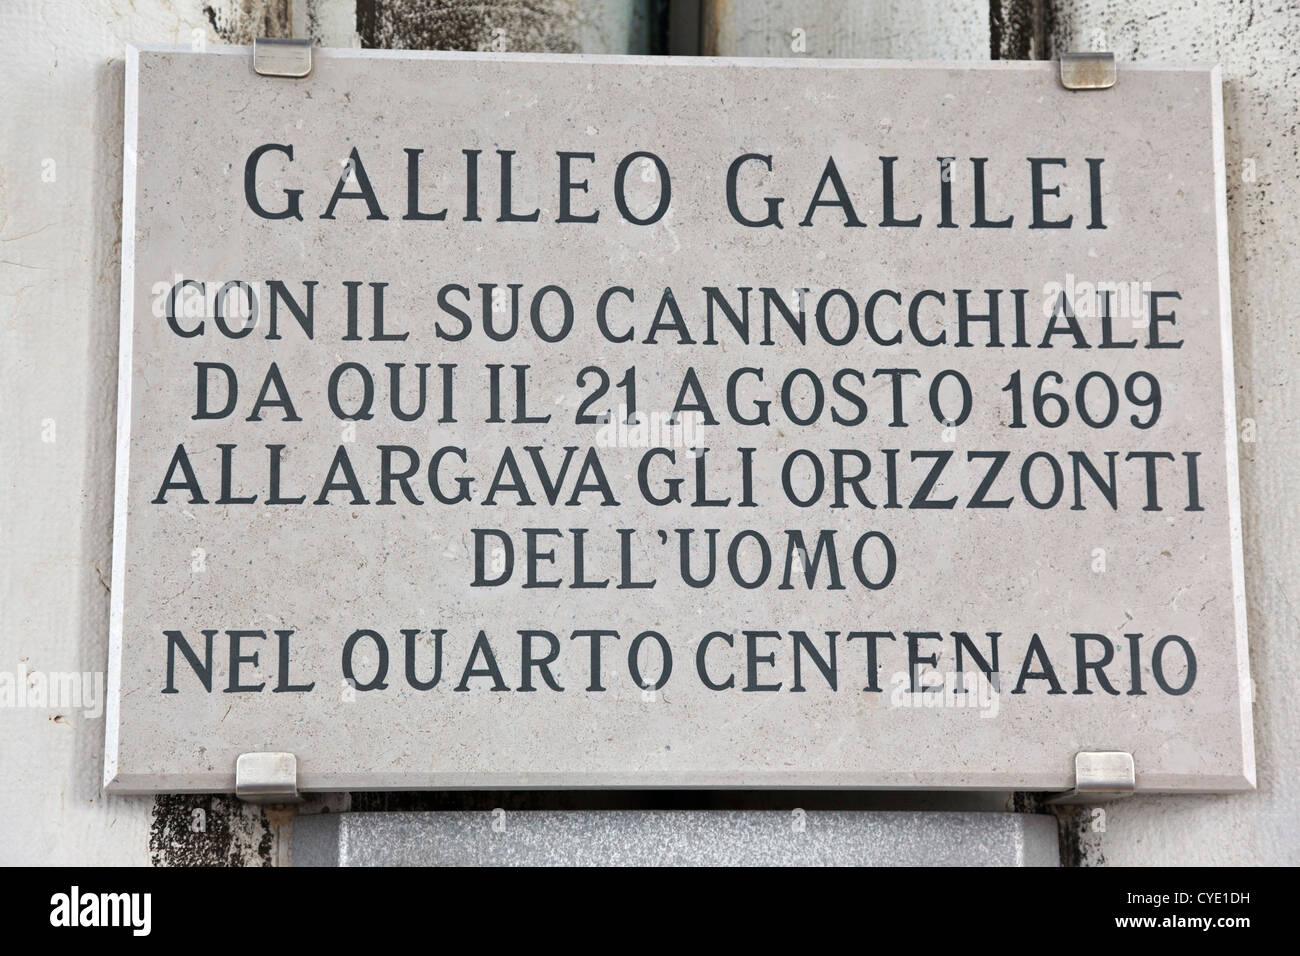 La placca la cima del Campanile di Piazza San Marco a Venezia per commemorare Galileo ha dimostrato il suo cannocchiale al Doge Foto Stock